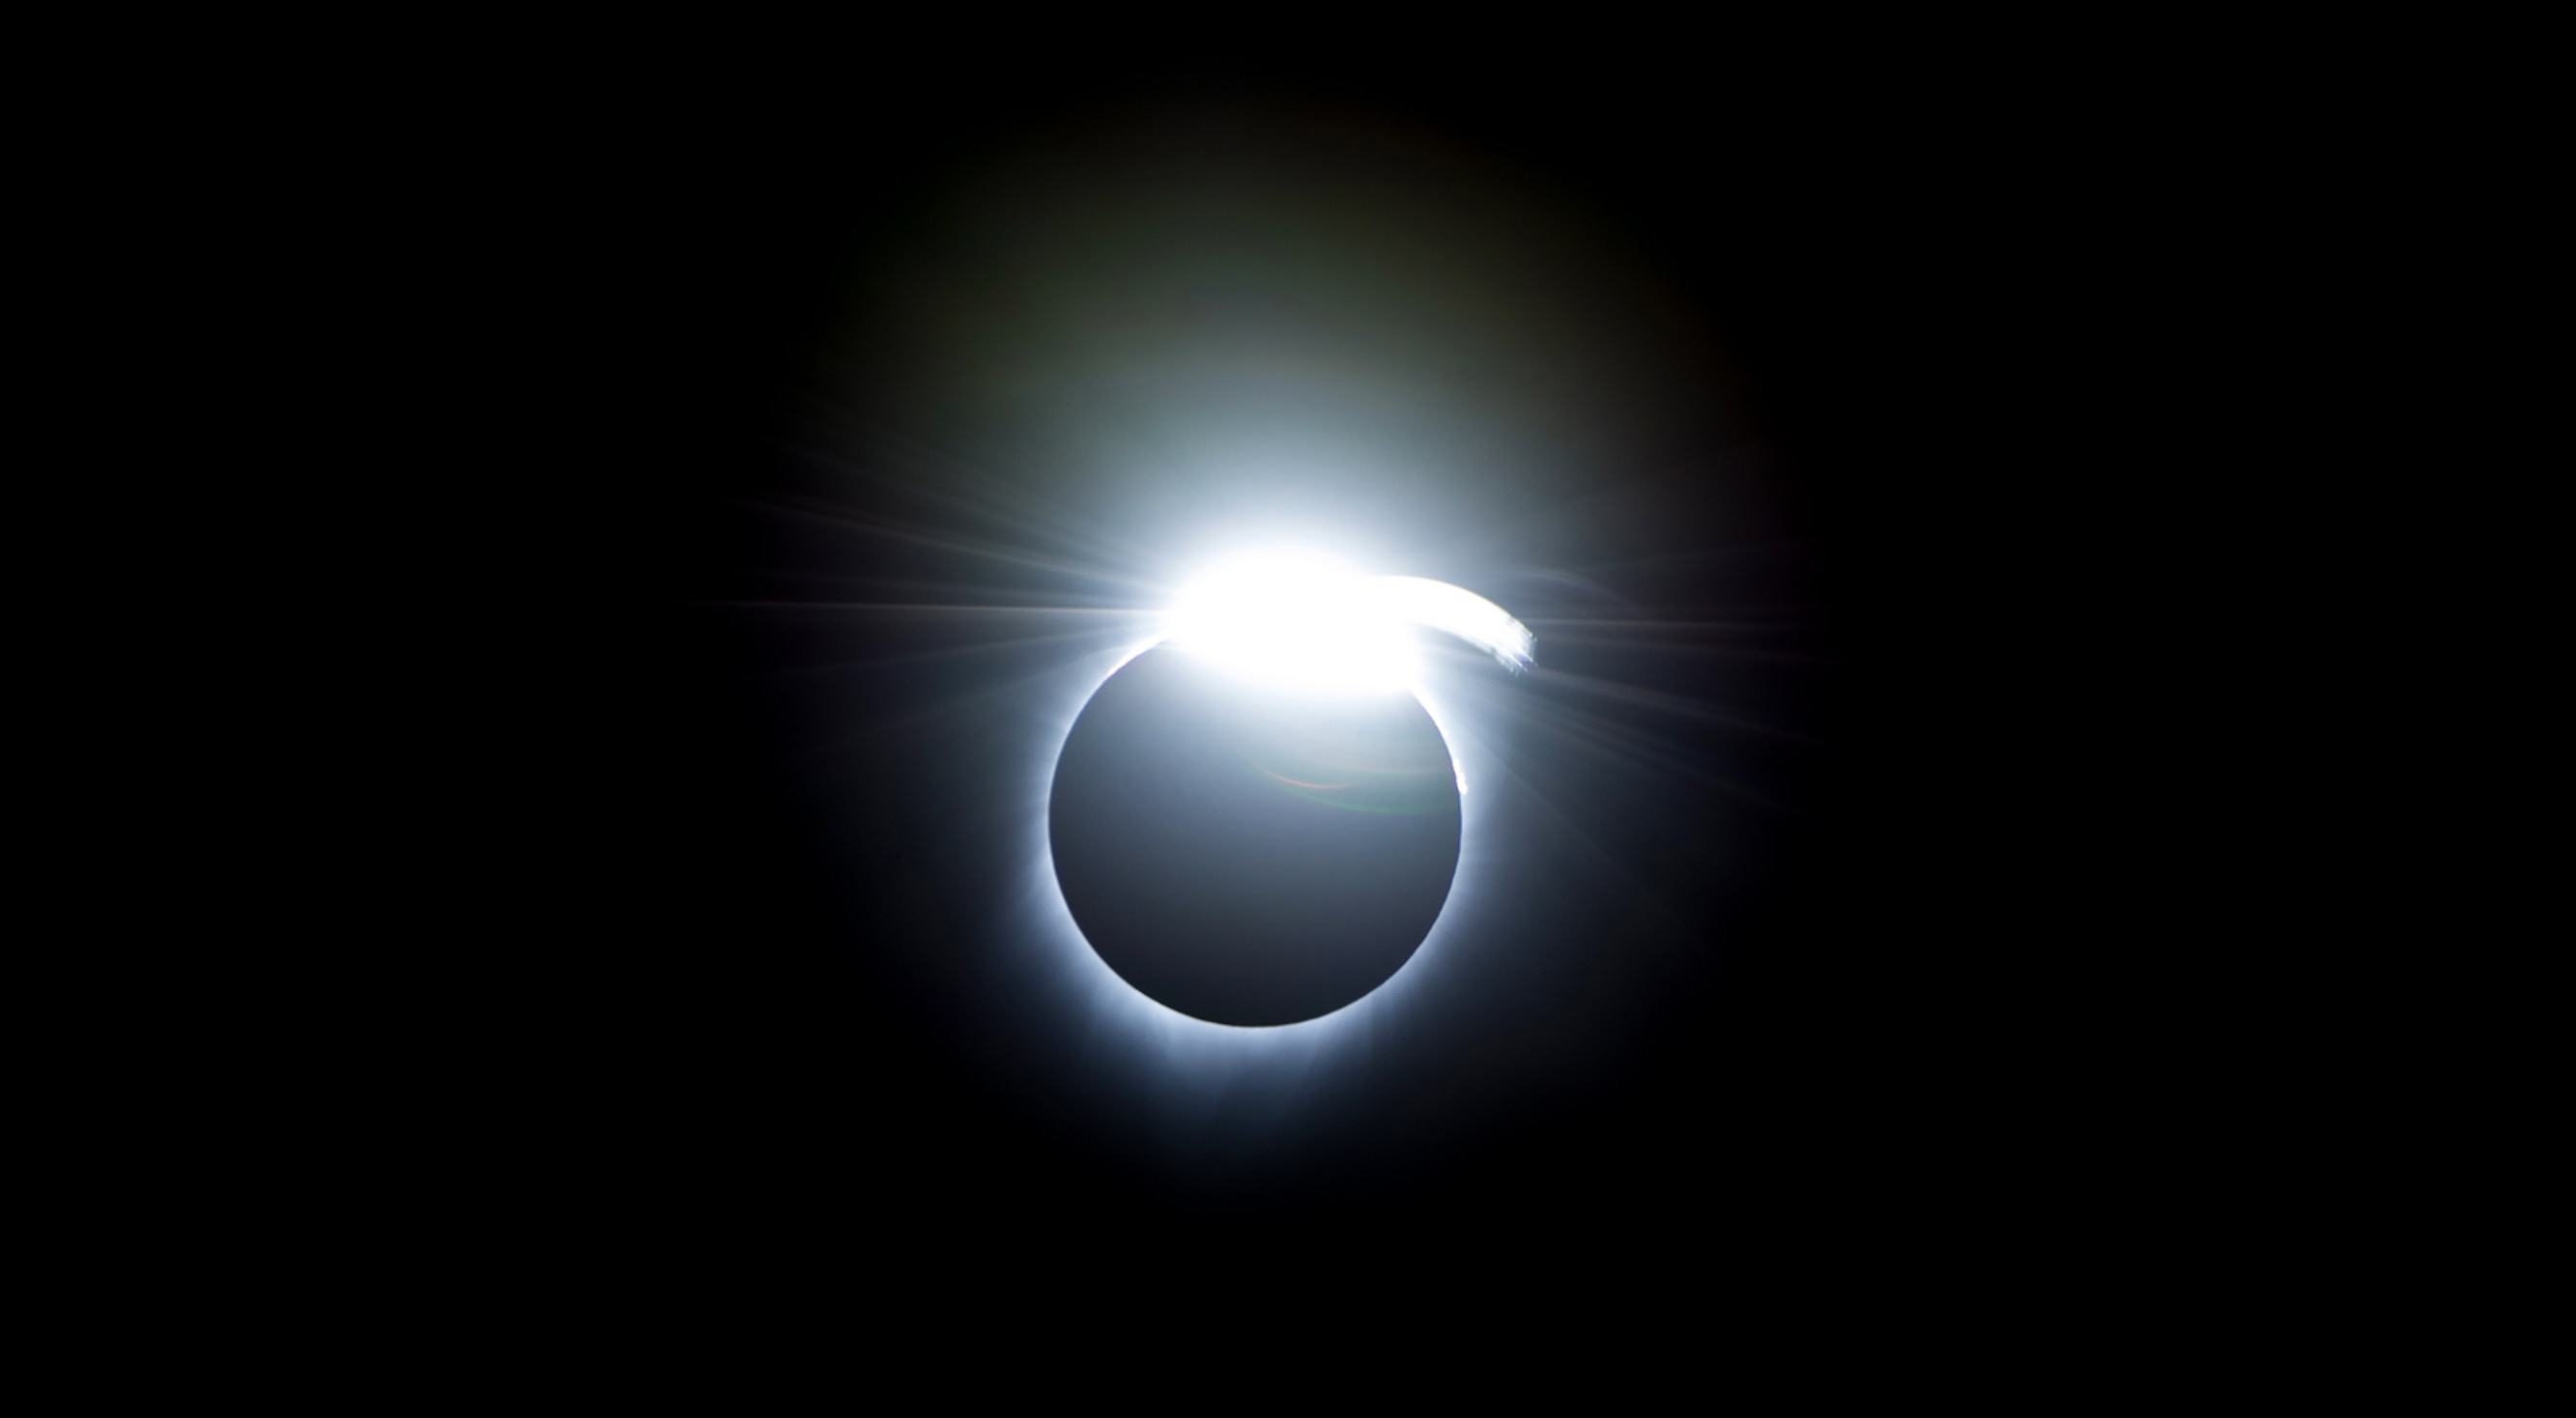 Vầng sáng làm hiện tượng nhật thực trông giống như một chiếc nhẫn. Ảnh: NASA